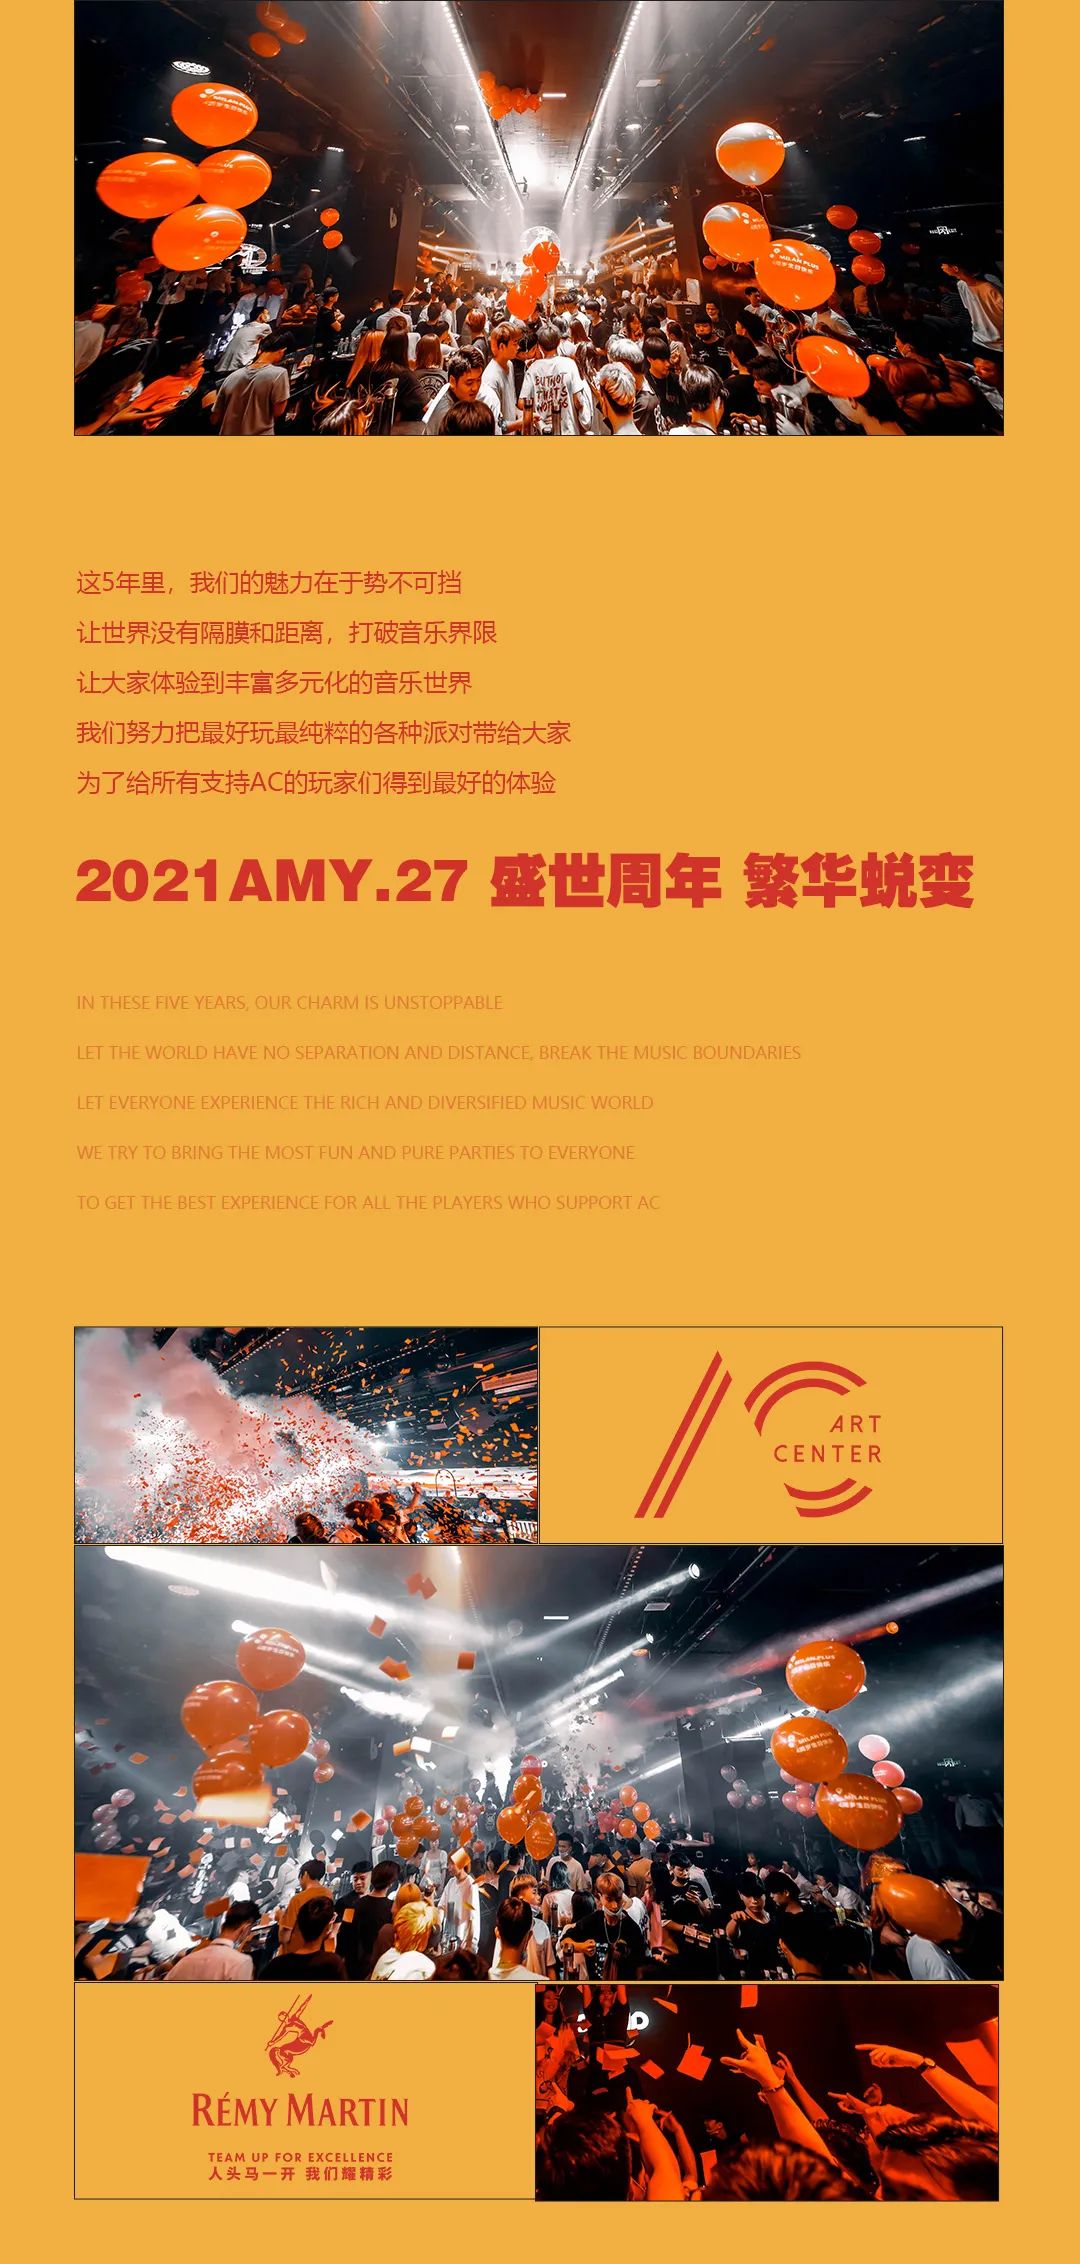 05.27 | 5周年店庆派对 嘉宾官宣@六哲-深圳AC酒吧/ART CENTER